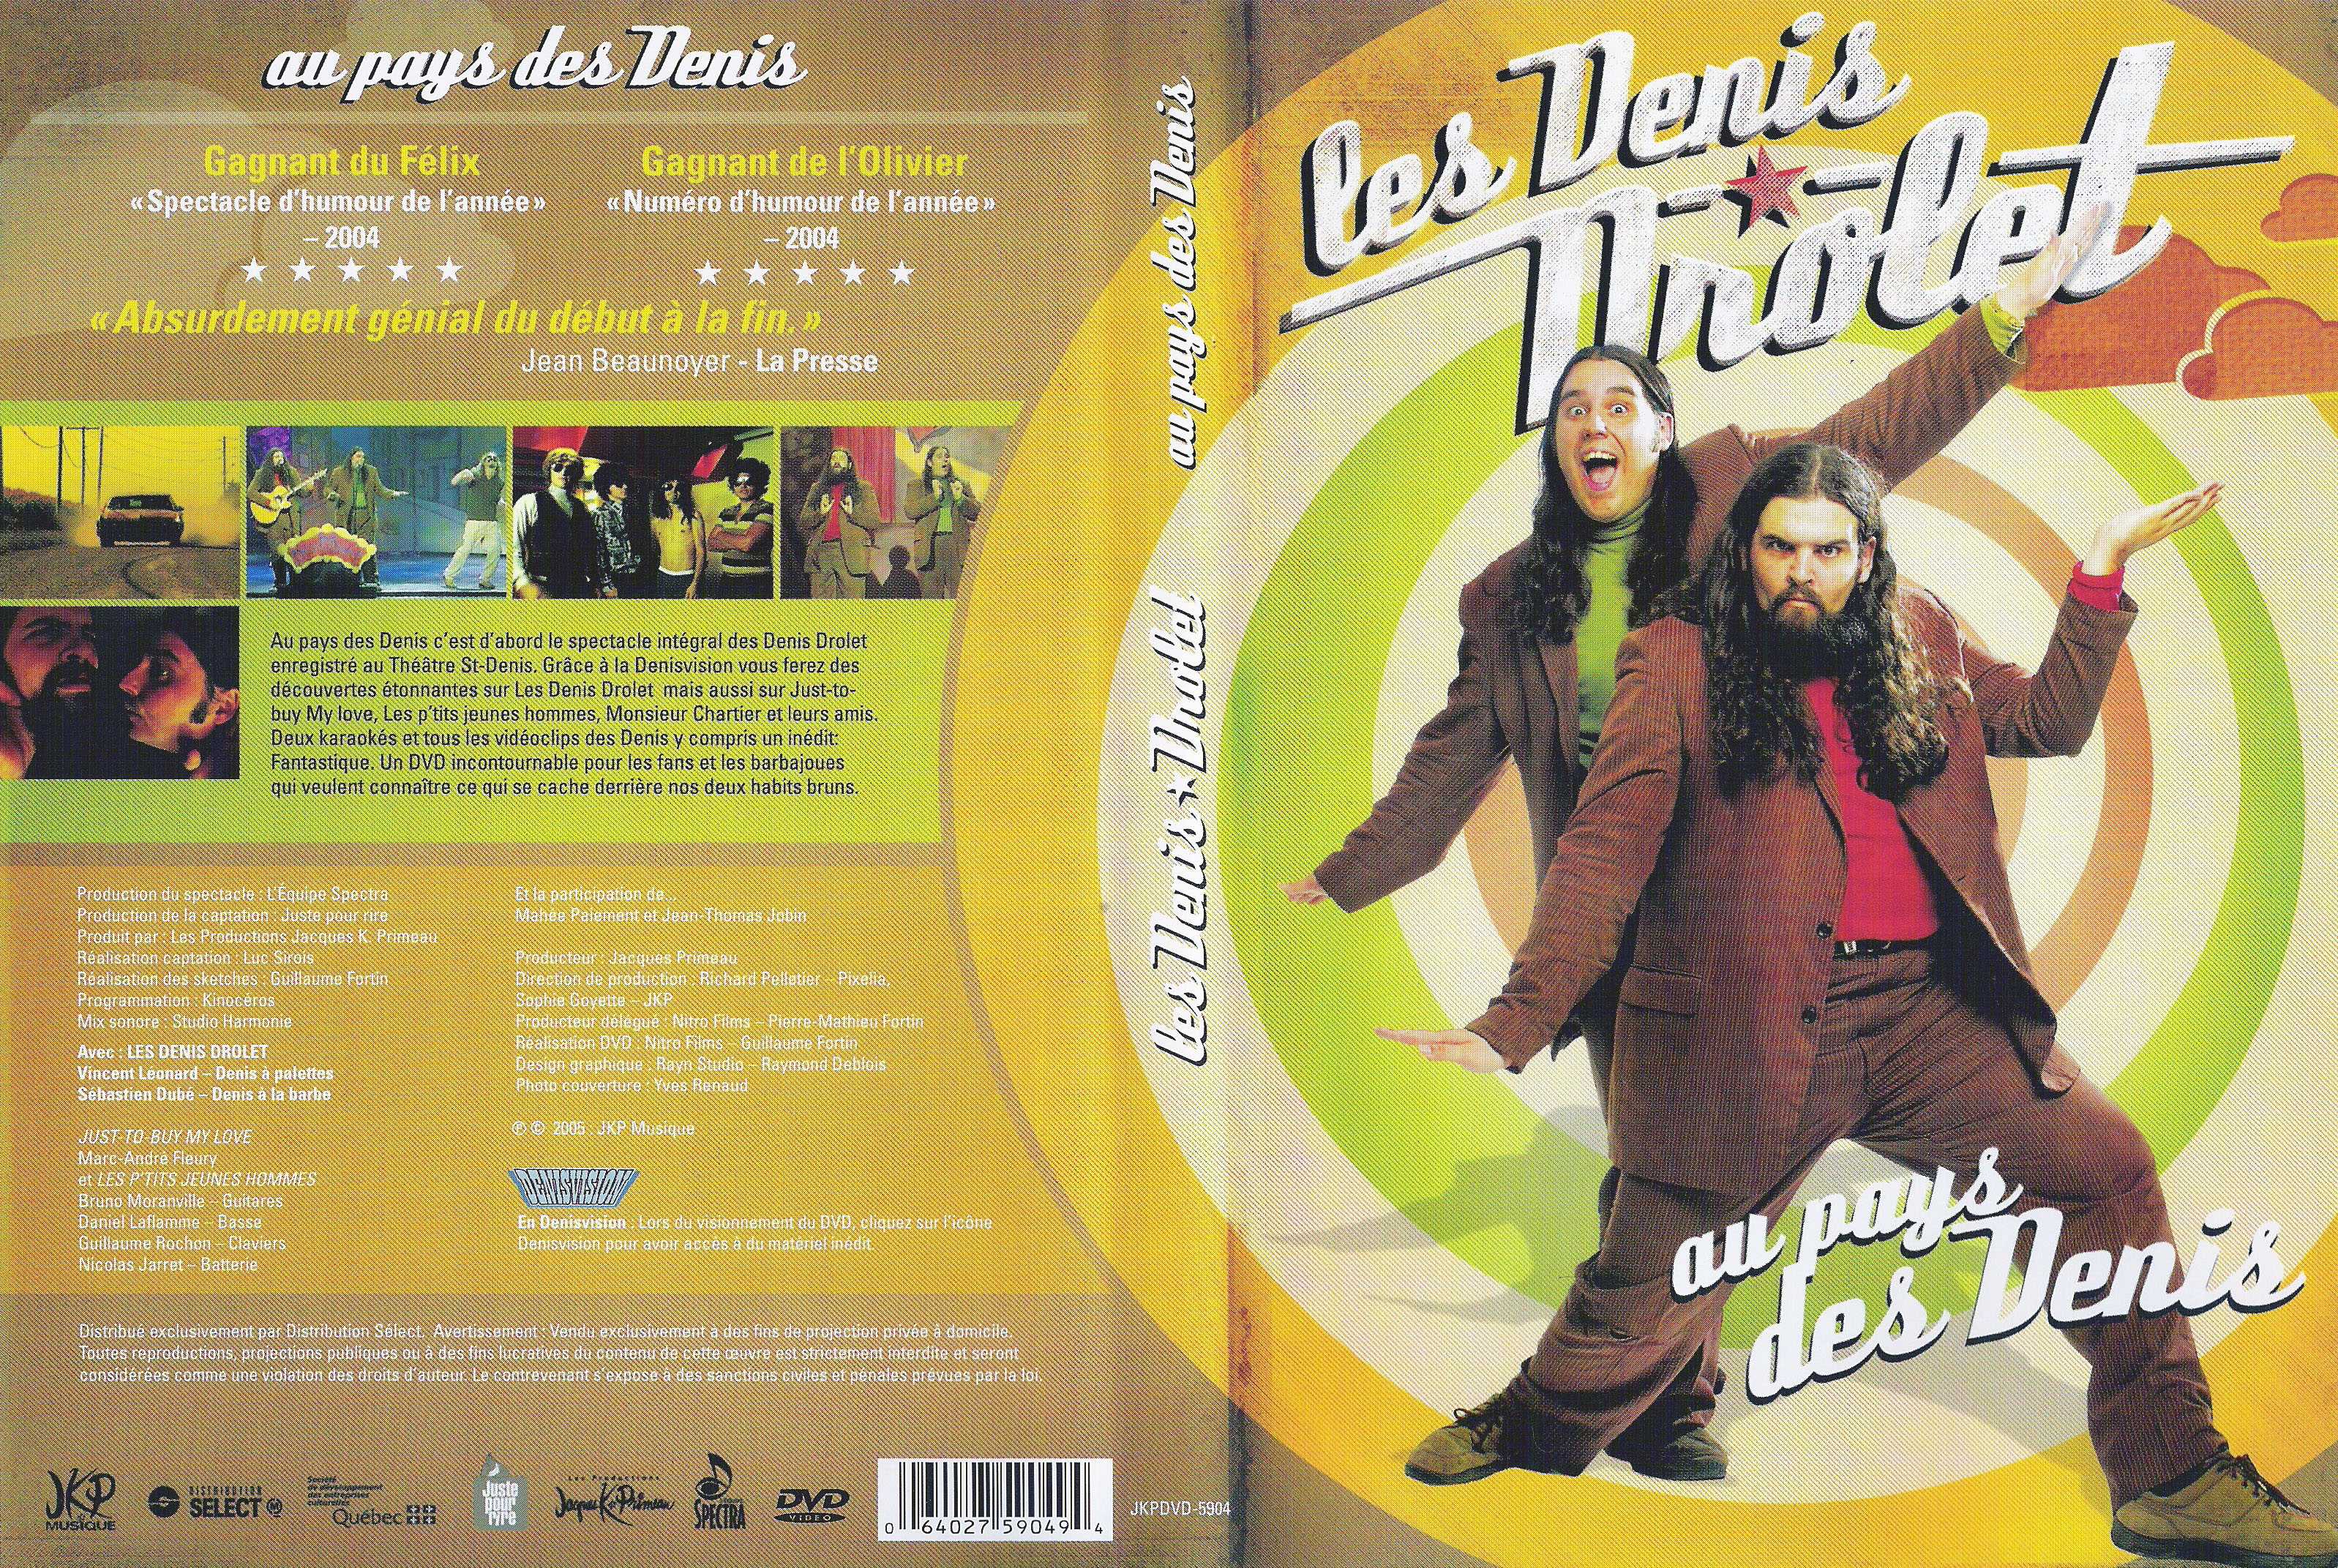 Jaquette DVD Les denis drolet